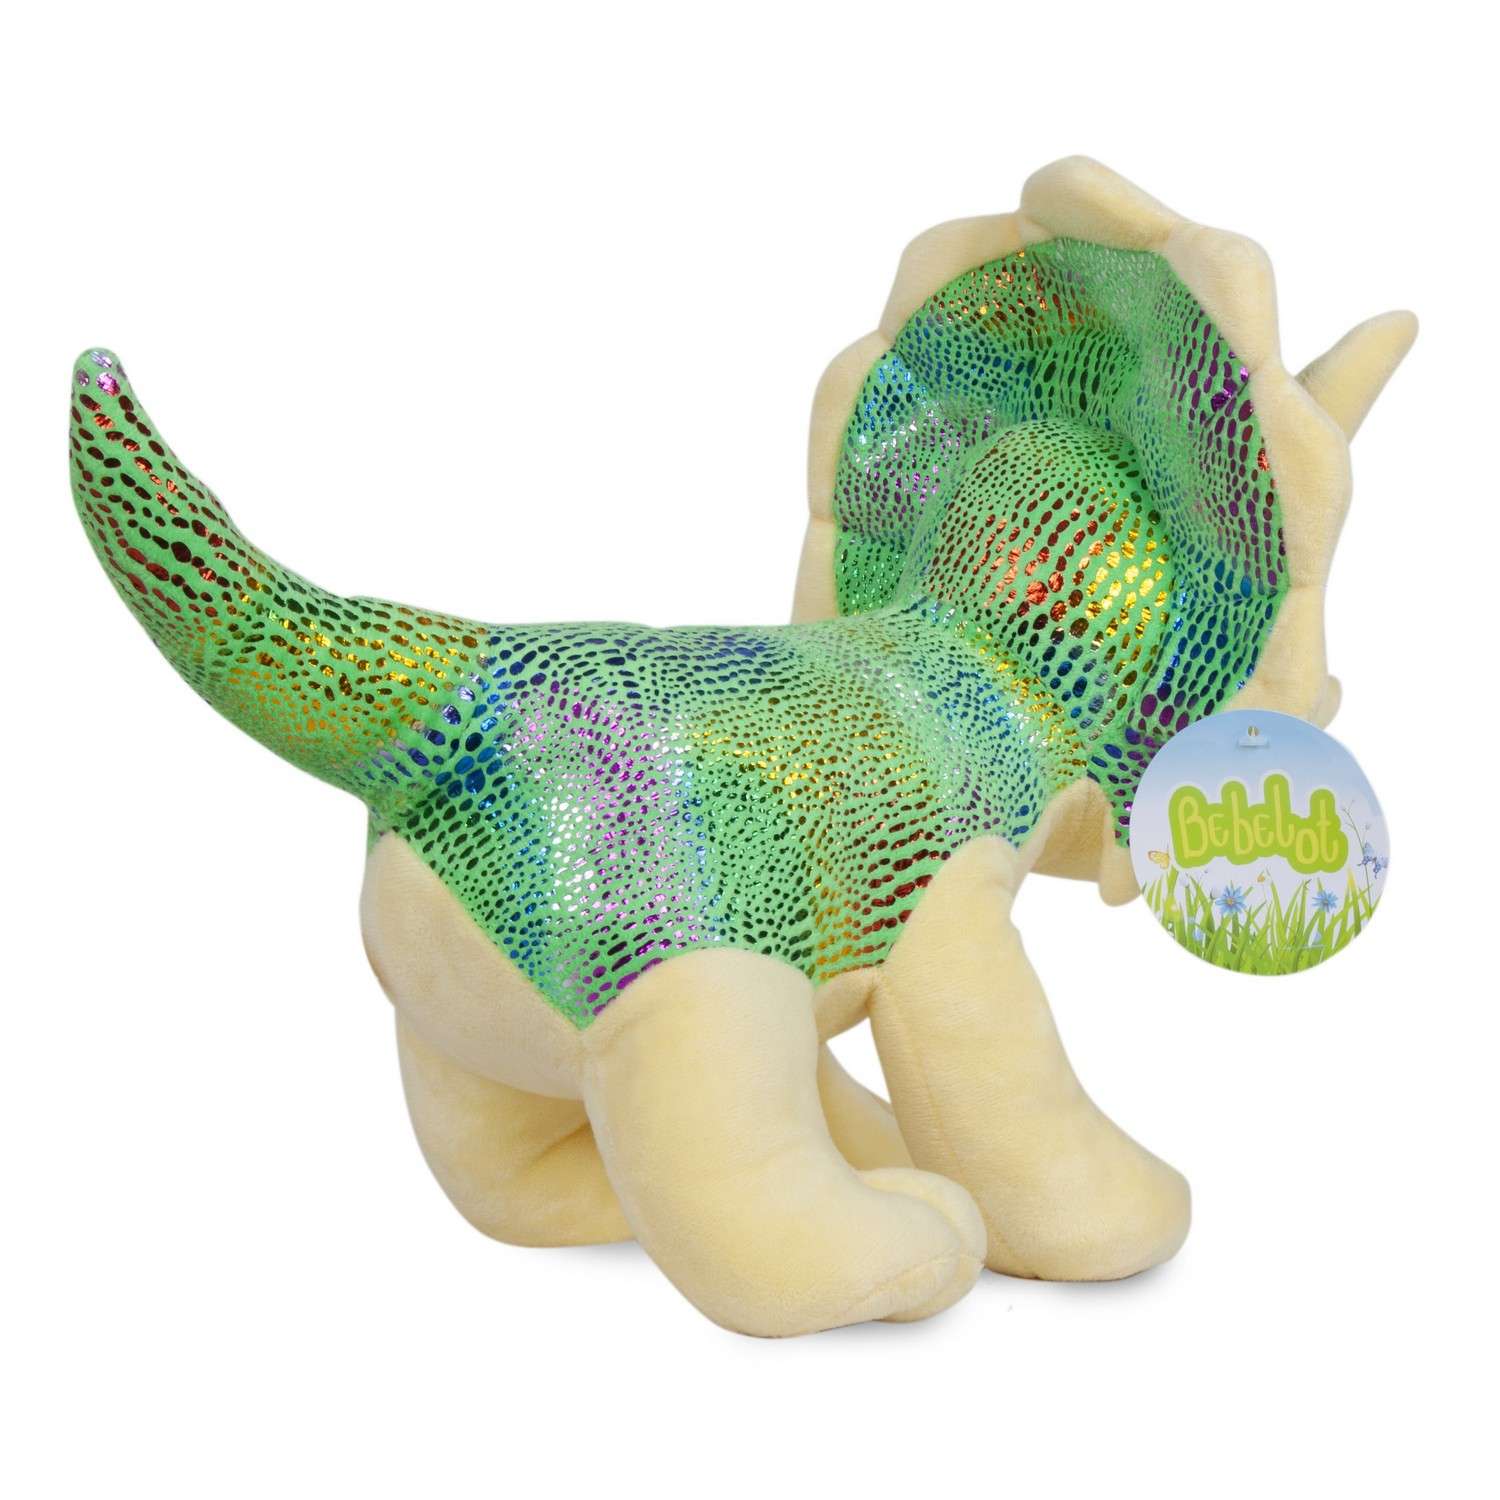 Мягкая игрушка Bebelot Динозаврик трицератопс 26 см - фото 2